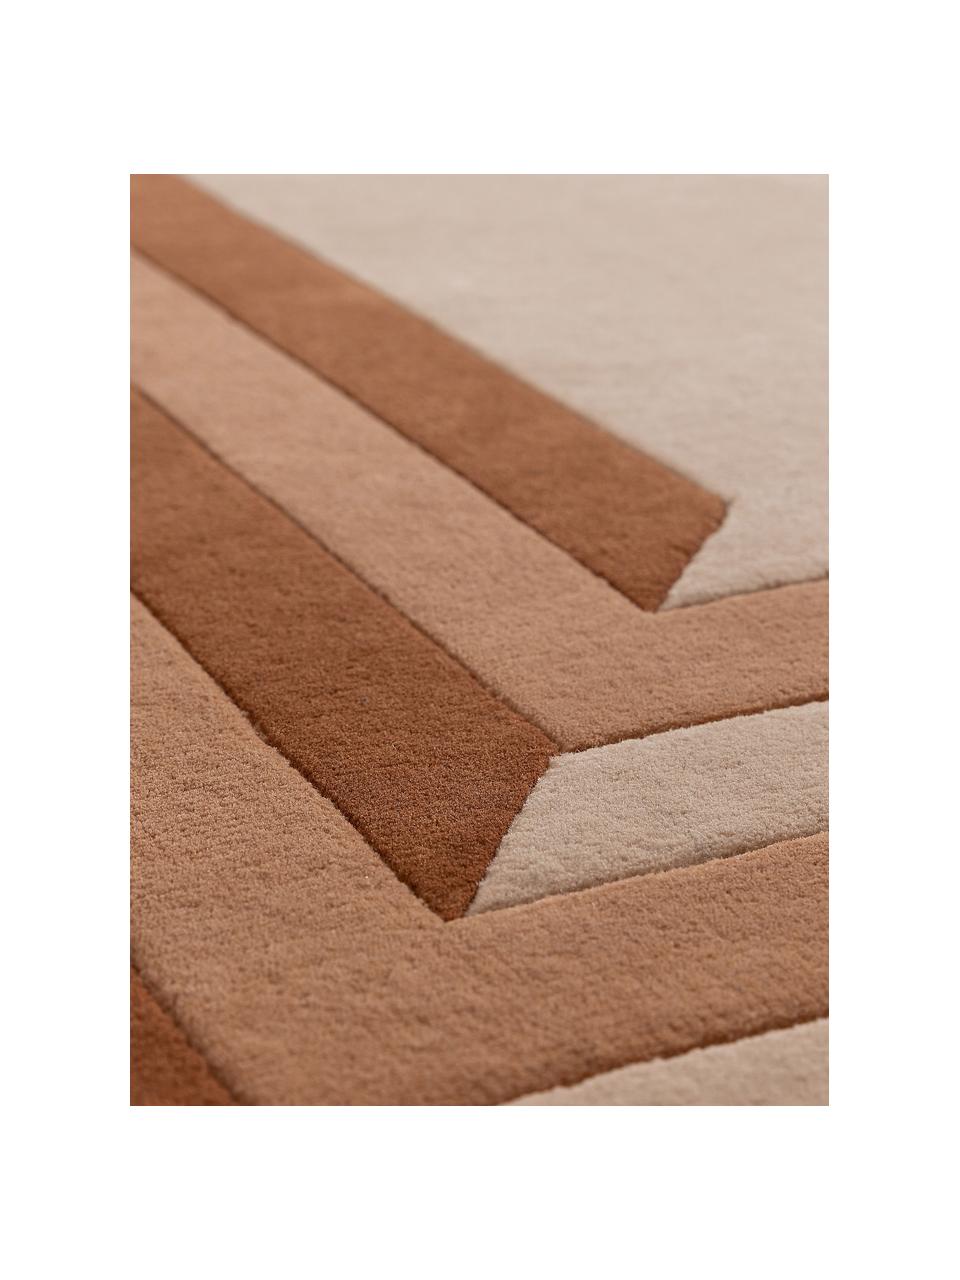 Ručně všívaný vlněný koberec Tilo, 100 % vlna

V prvních týdnech používání vlněných koberců se může objevit charakteristický jev uvolňování vláken, který po několika týdnech používání ustane., Odstíny terakotové, Š 160 cm, D 230 cm (velikost M)